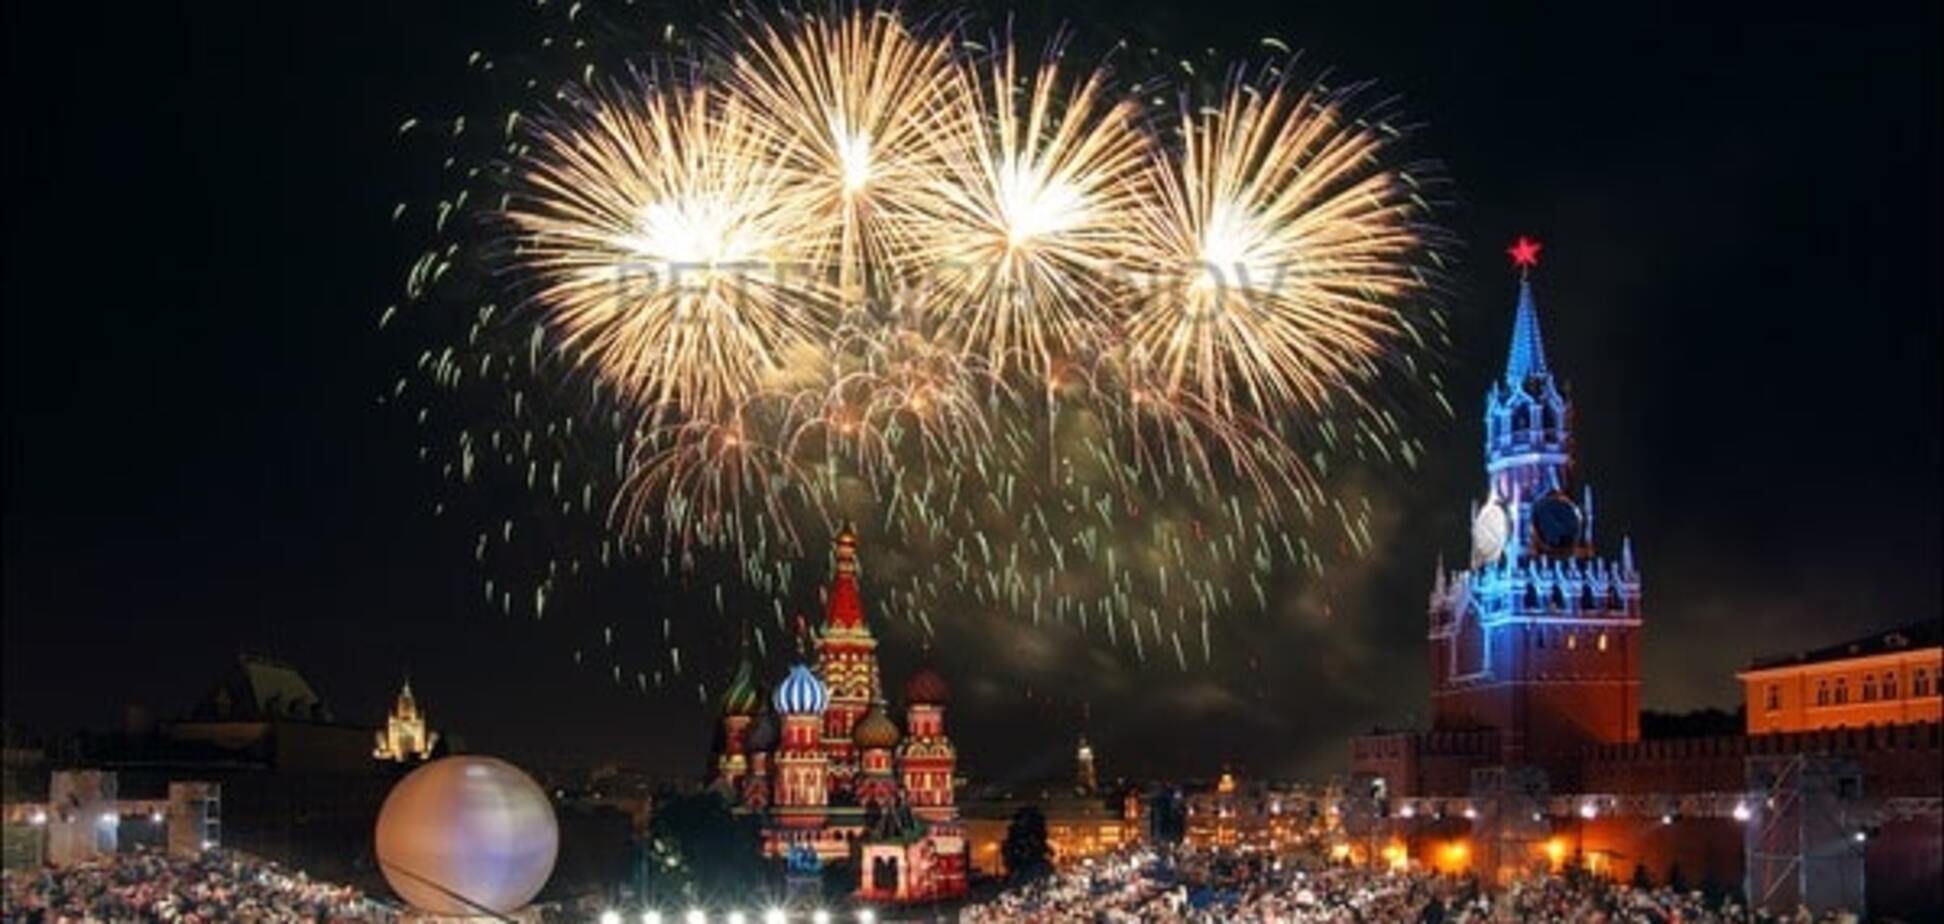 Угроза теракта: у Путина решили закрыть Красную площадь на Новый год - СМИ